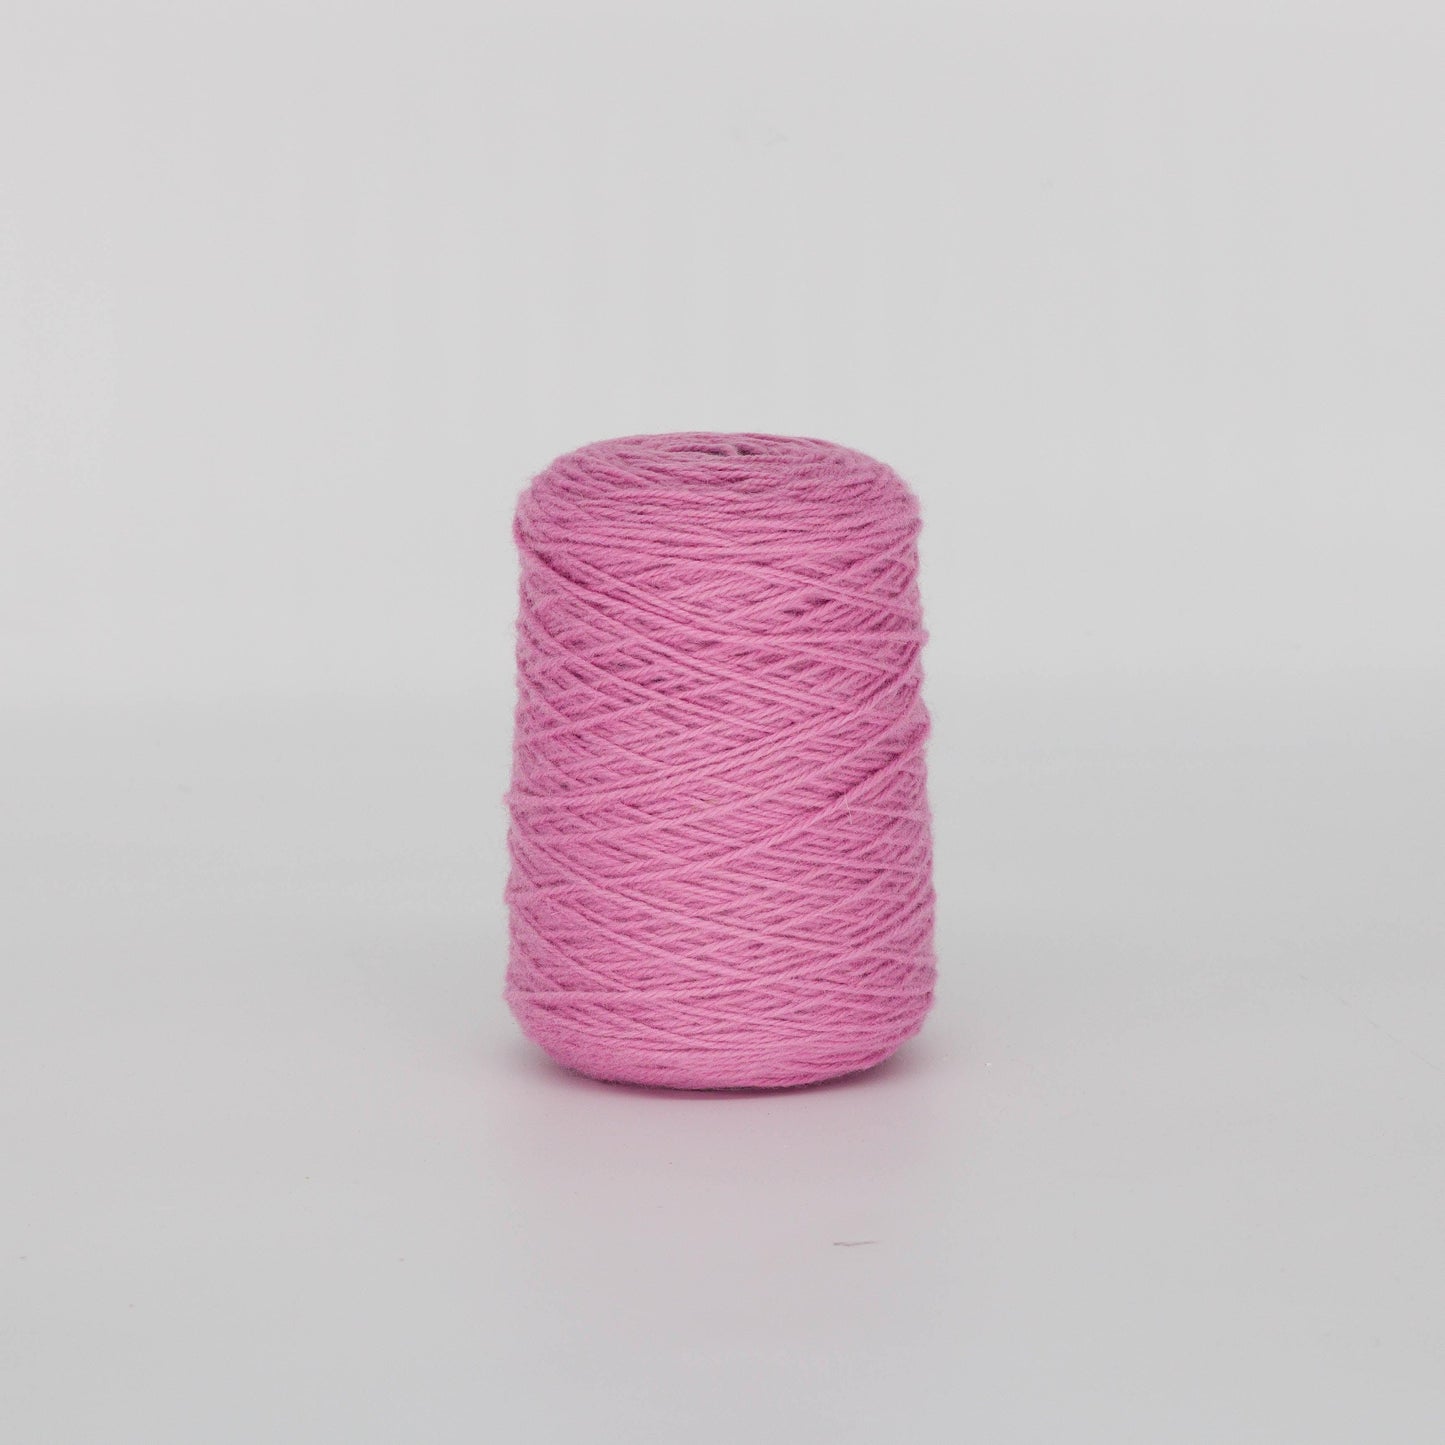 Rose pink 100% Wool Rug Yarn On Cones (485) - Tuftingshop